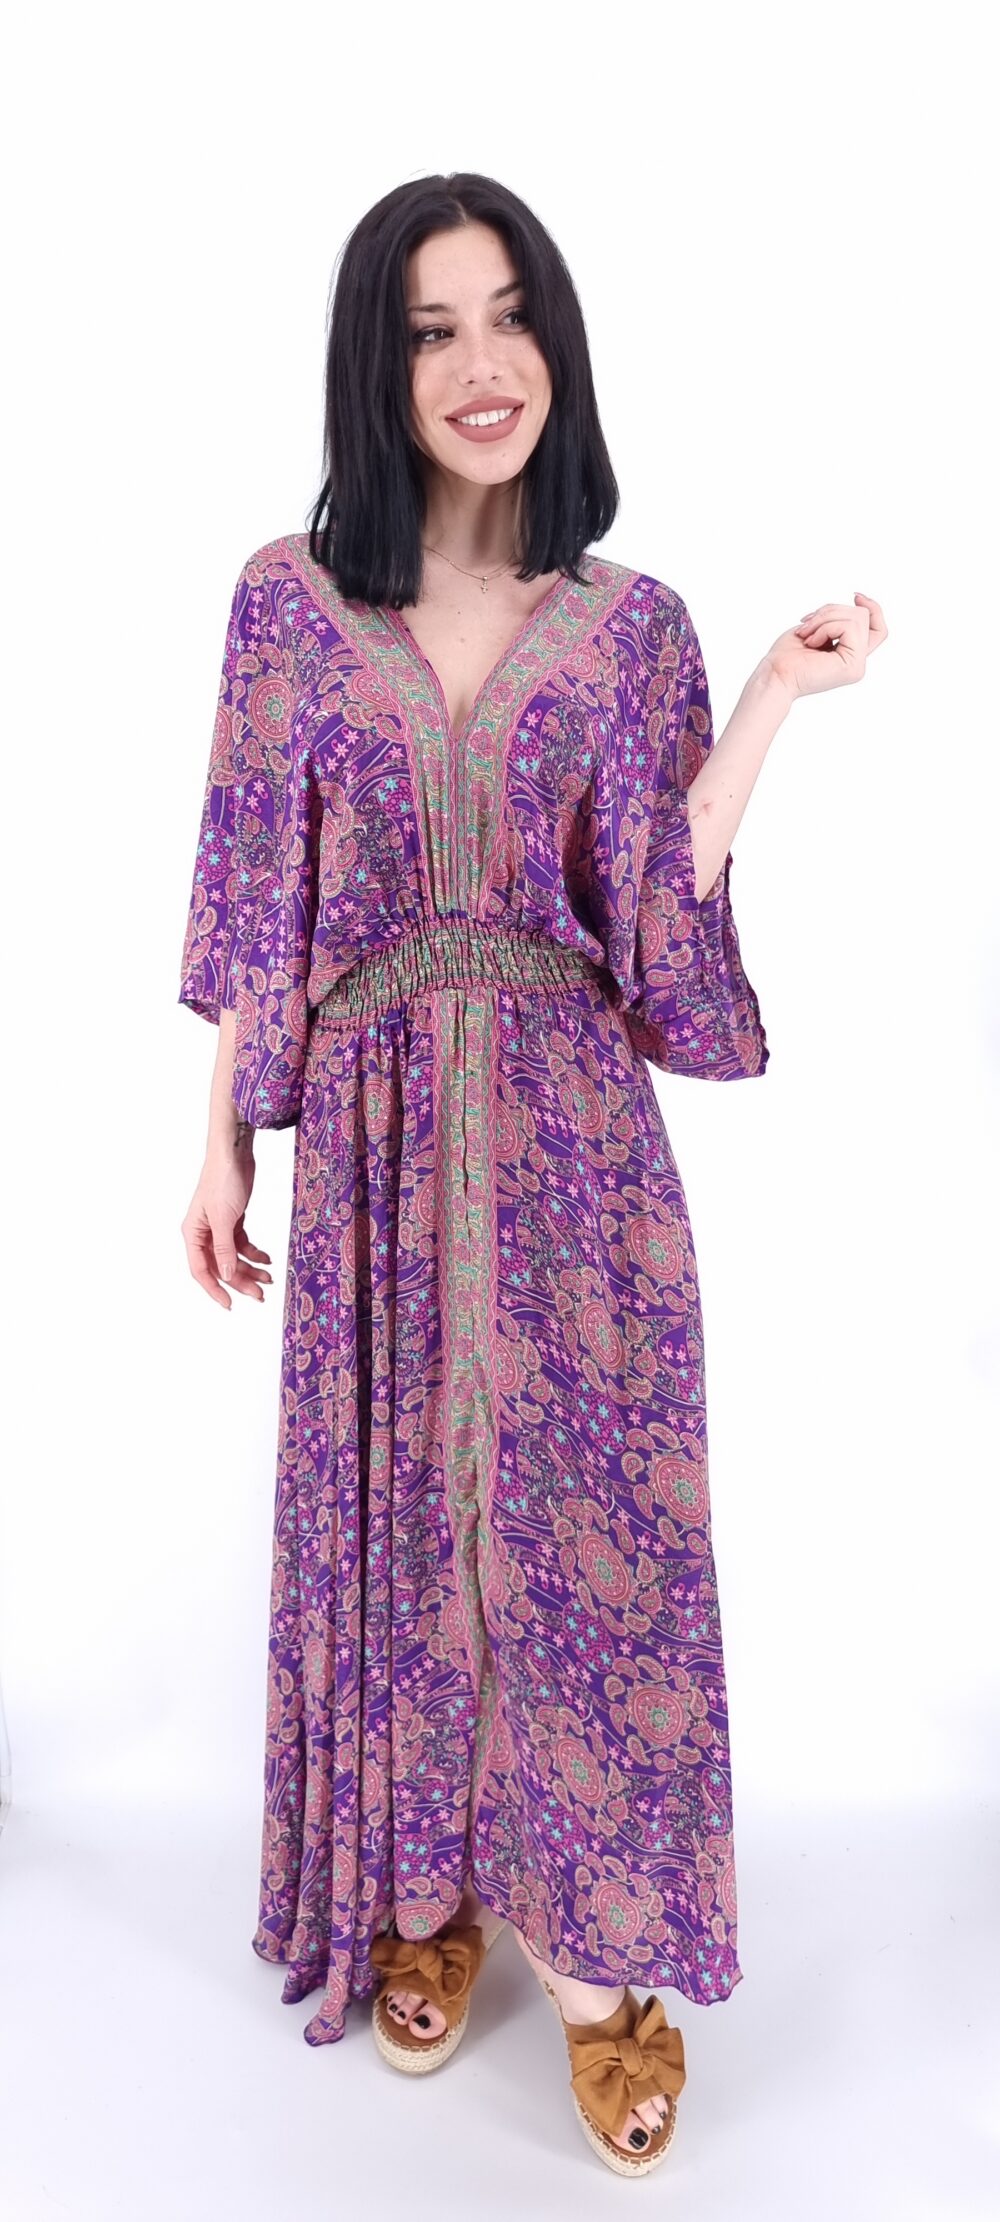 Φόρεμα μακρύ με μοτίβο λαχούρι σε μωβ αποχρώσεις